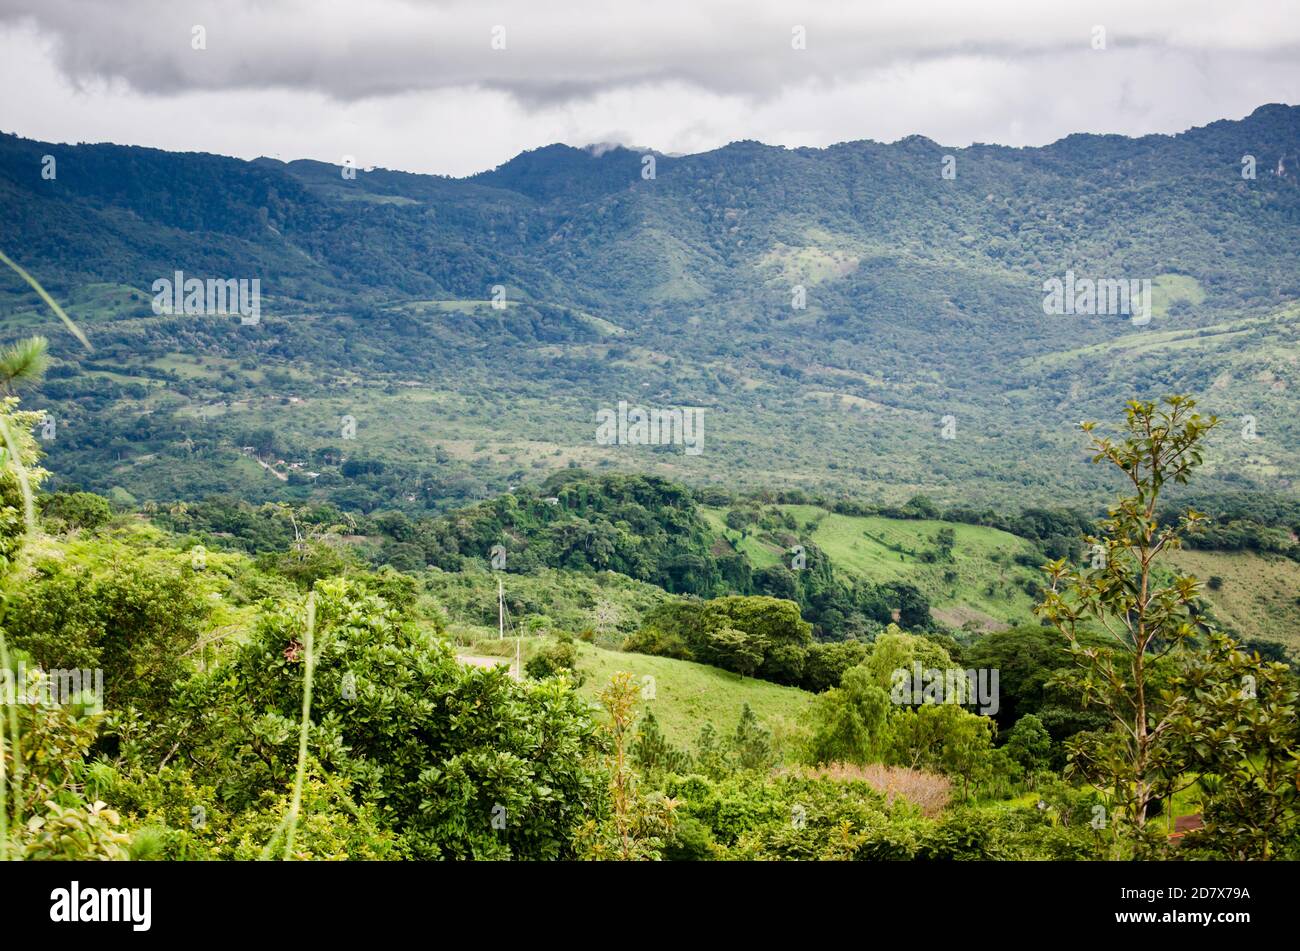 The mountain range of Altos de Campana National Park, as seen from Sora in Central Panama Stock Photo